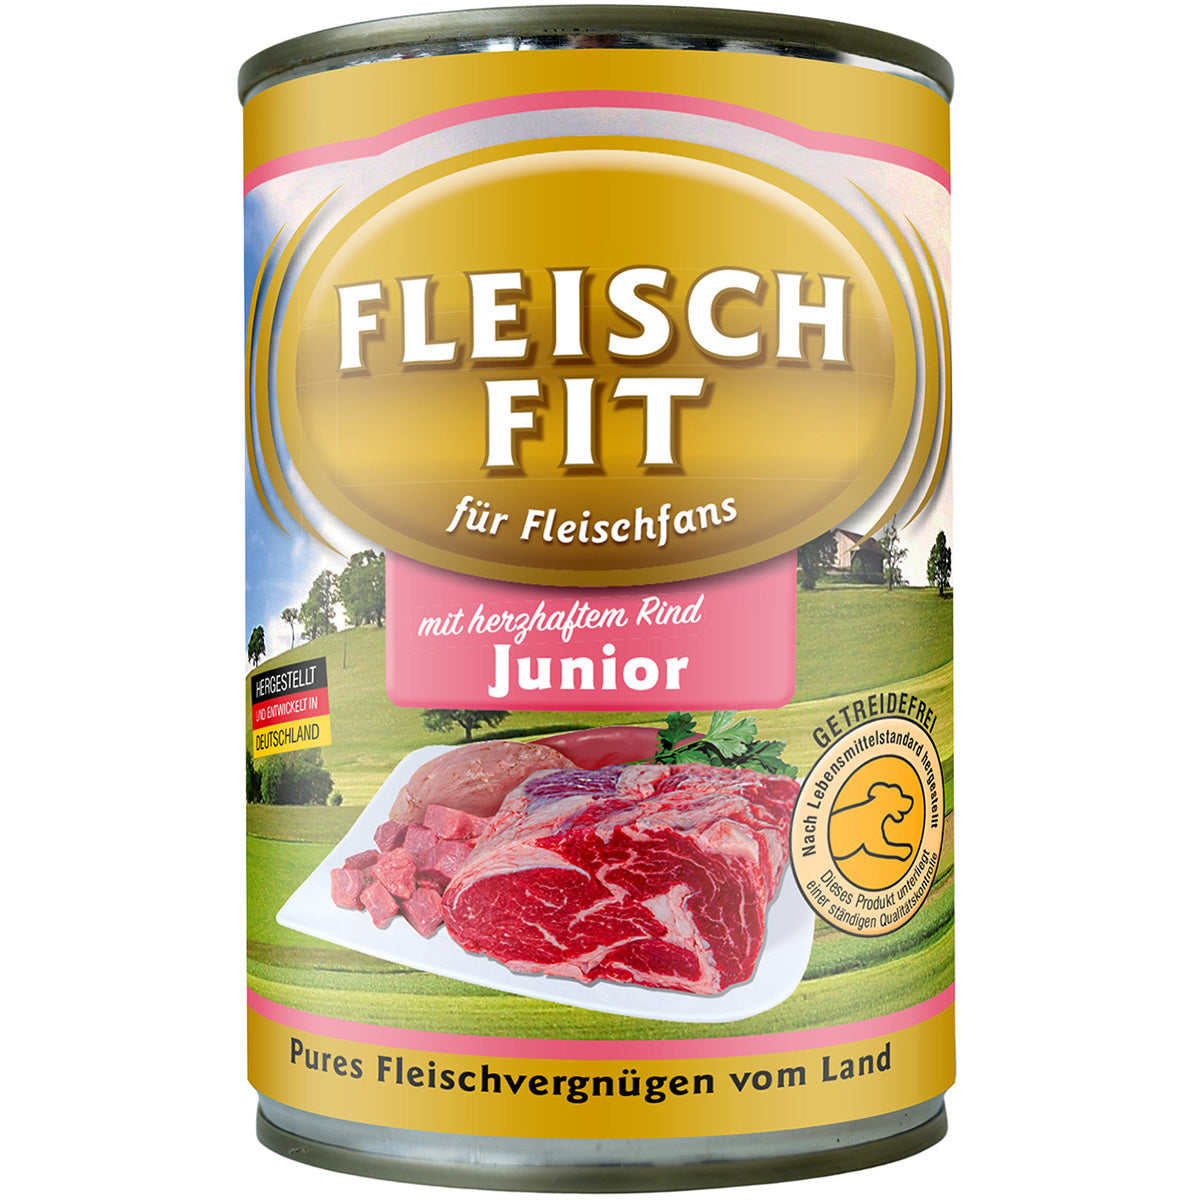 FleischFit Junior, 400g